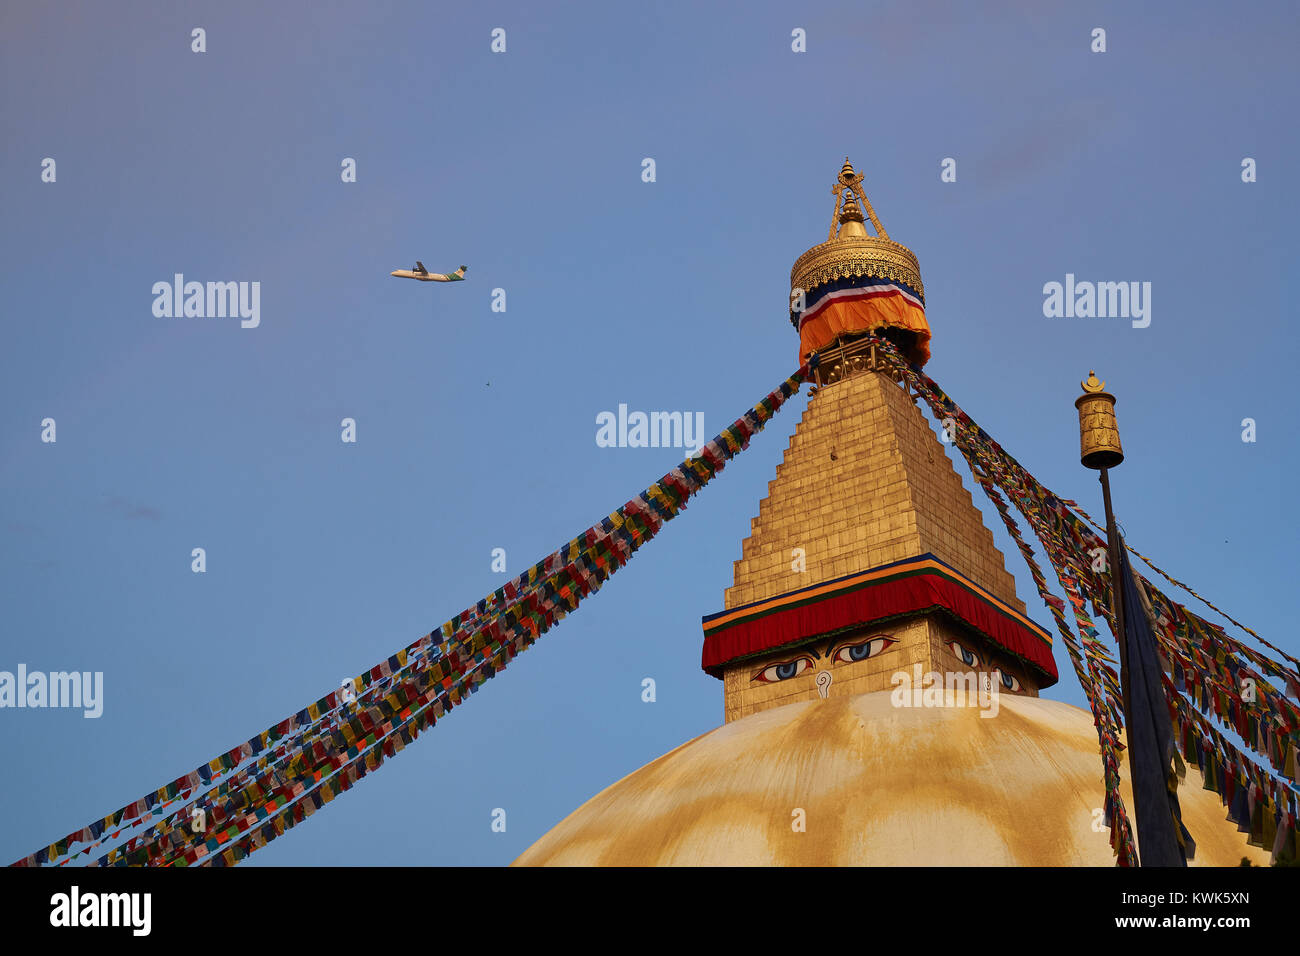 Au-dessus de l'avion de stupa bouddhiste Boudhanath, Katmandou, Népal Banque D'Images